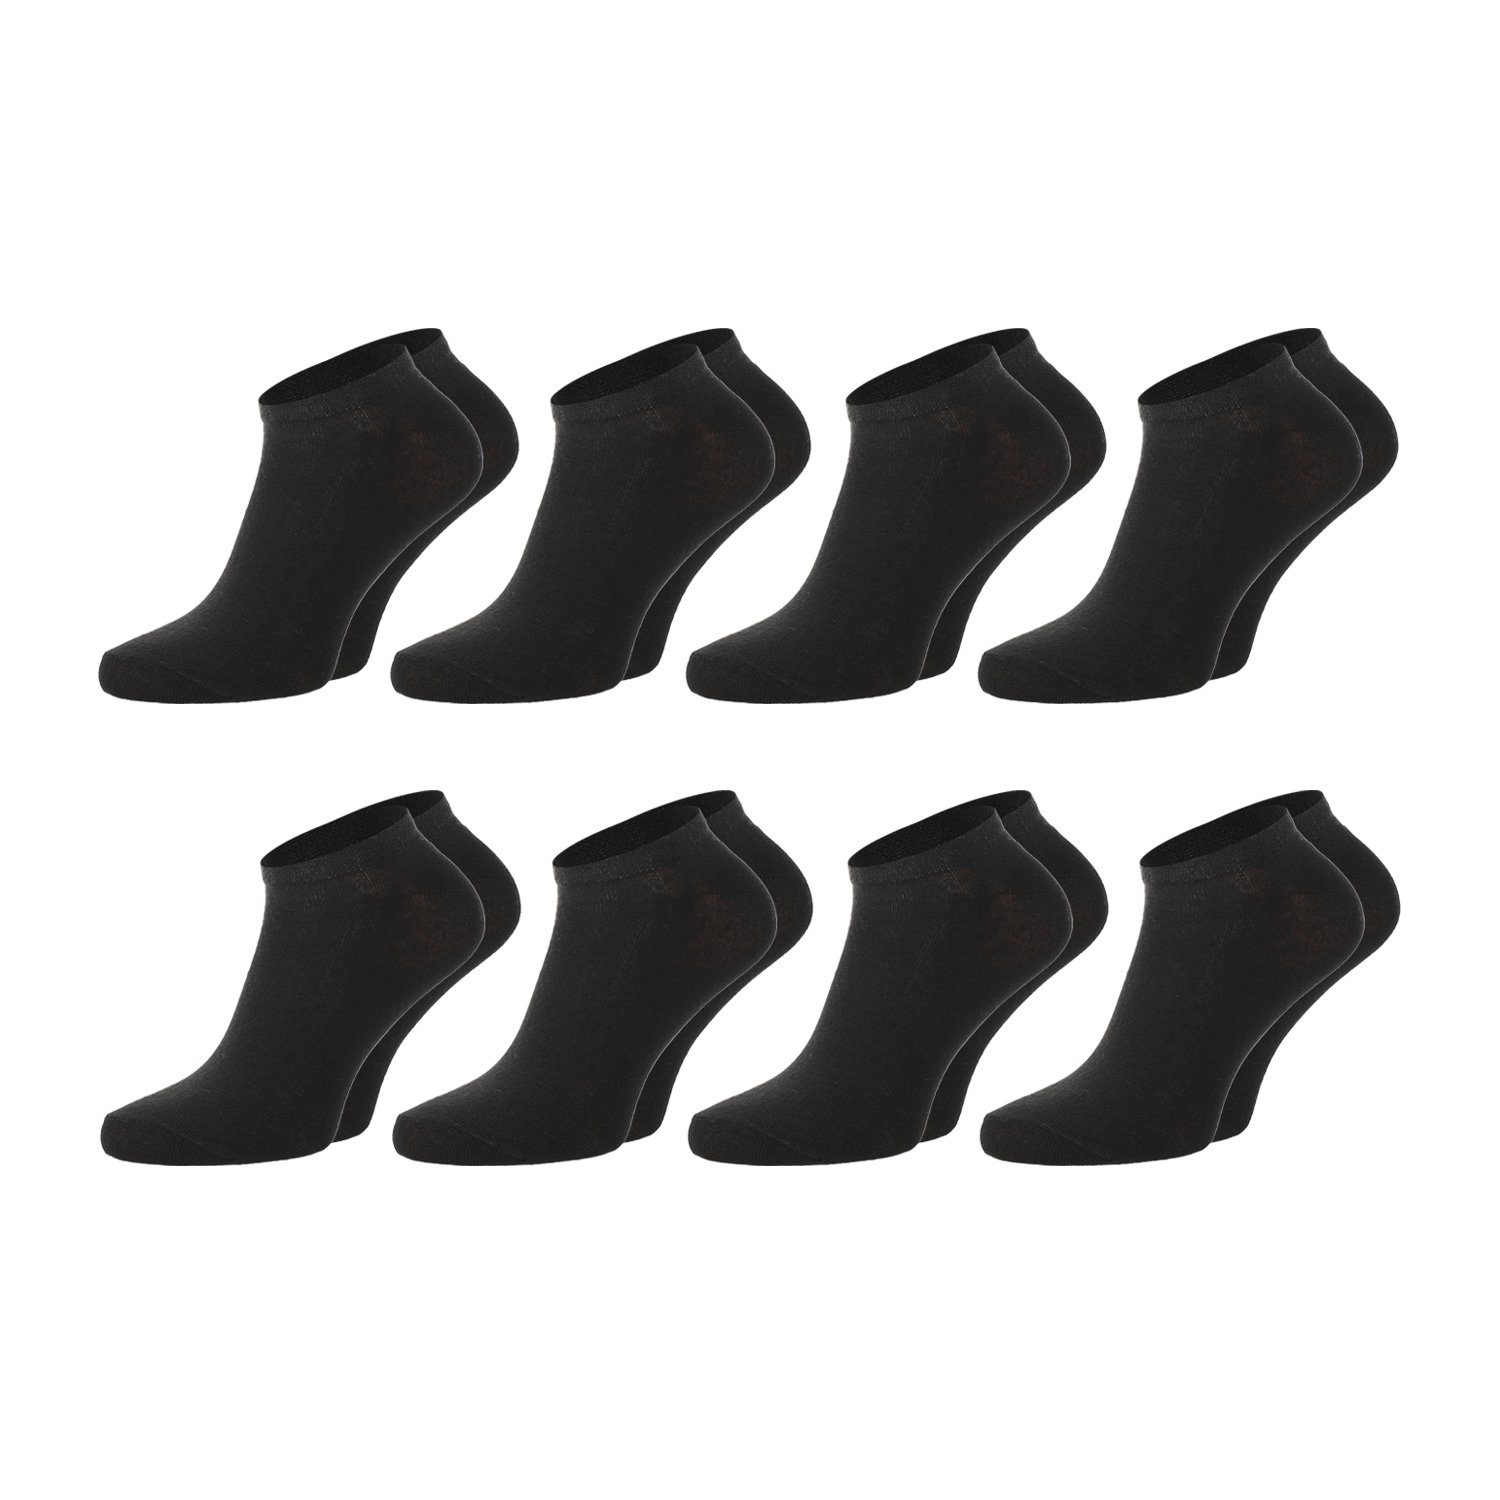 Chili Lifestyle Strümpfe Sneaker Schwarz, 8 Paar, für Damen und Herren, Sport, Freizeit